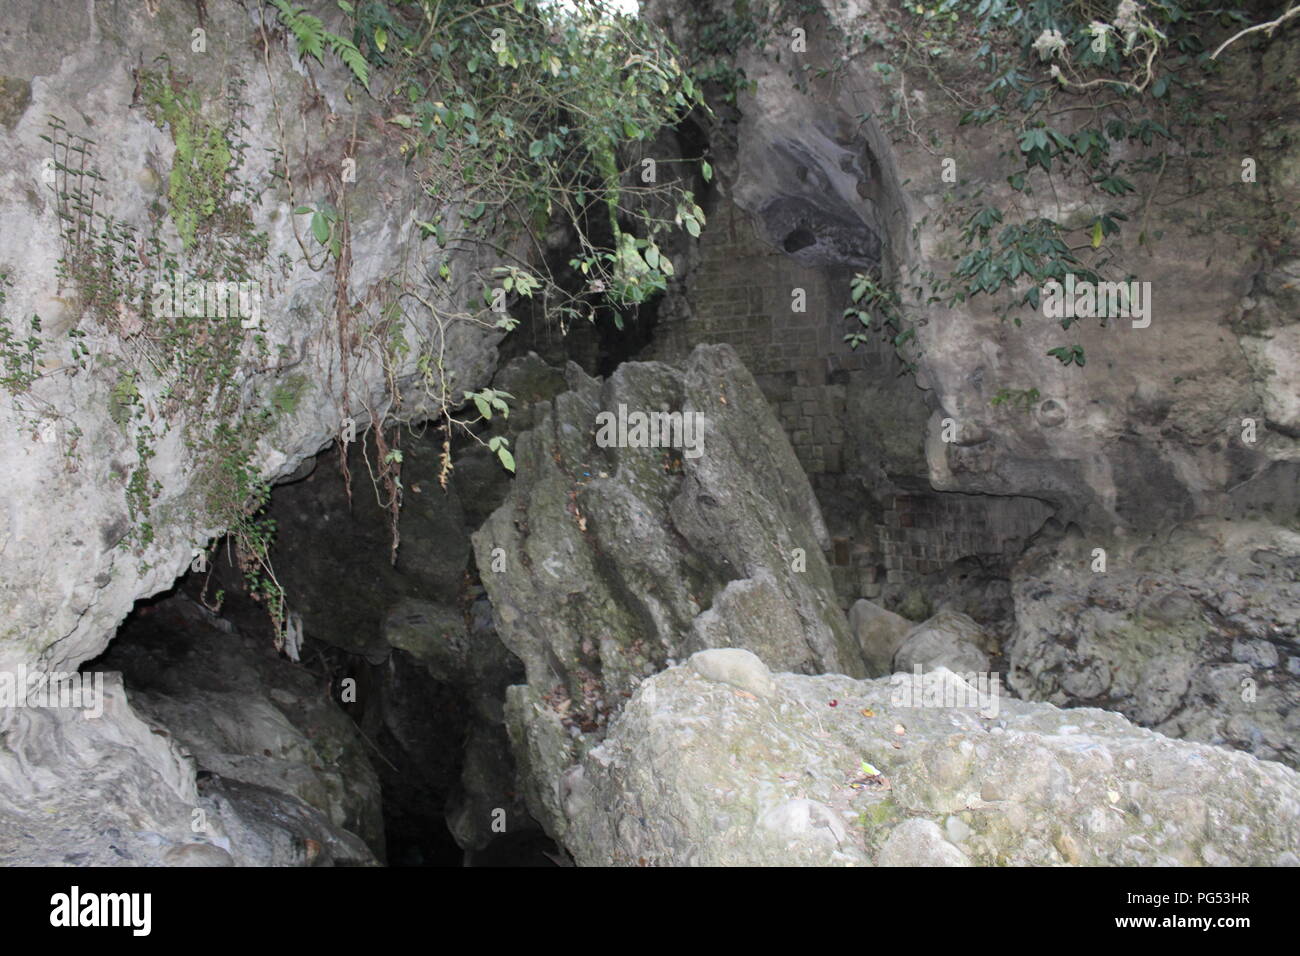 La cueva de ladrones de Dehradun Uttarakhand India . También conocido como Guchu/Guchhu pani.Uno de los mejores lugar para visitar en Dehradun Foto de stock